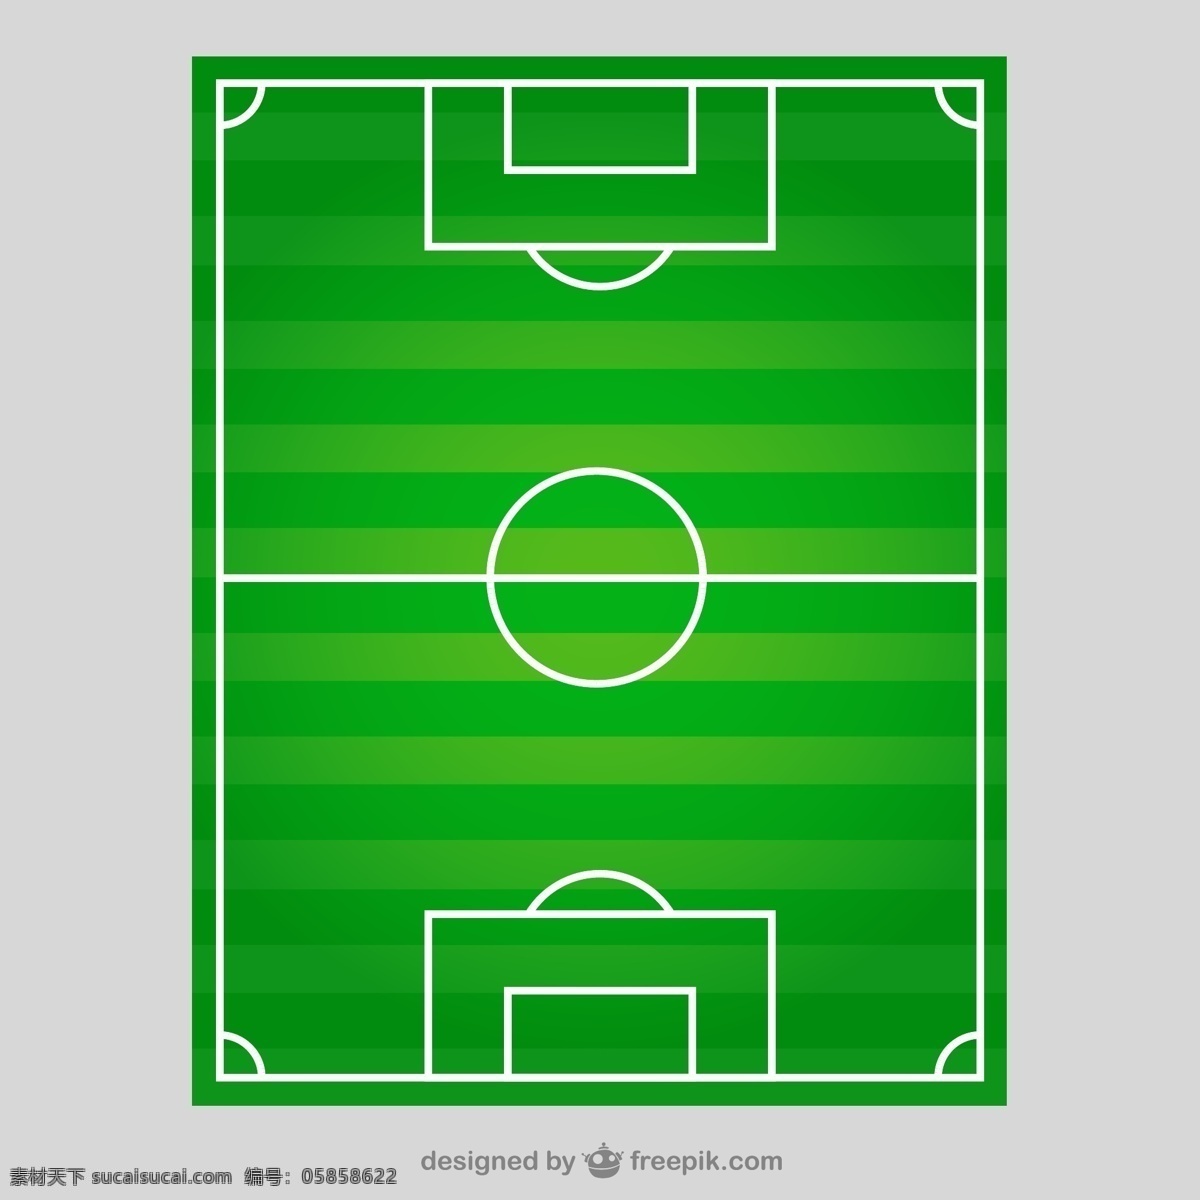 创意 足球场 俯视图 矢量 球门 球门线 边线 半场 罚球区 角球弧 足球 体育 矢量图 绿色